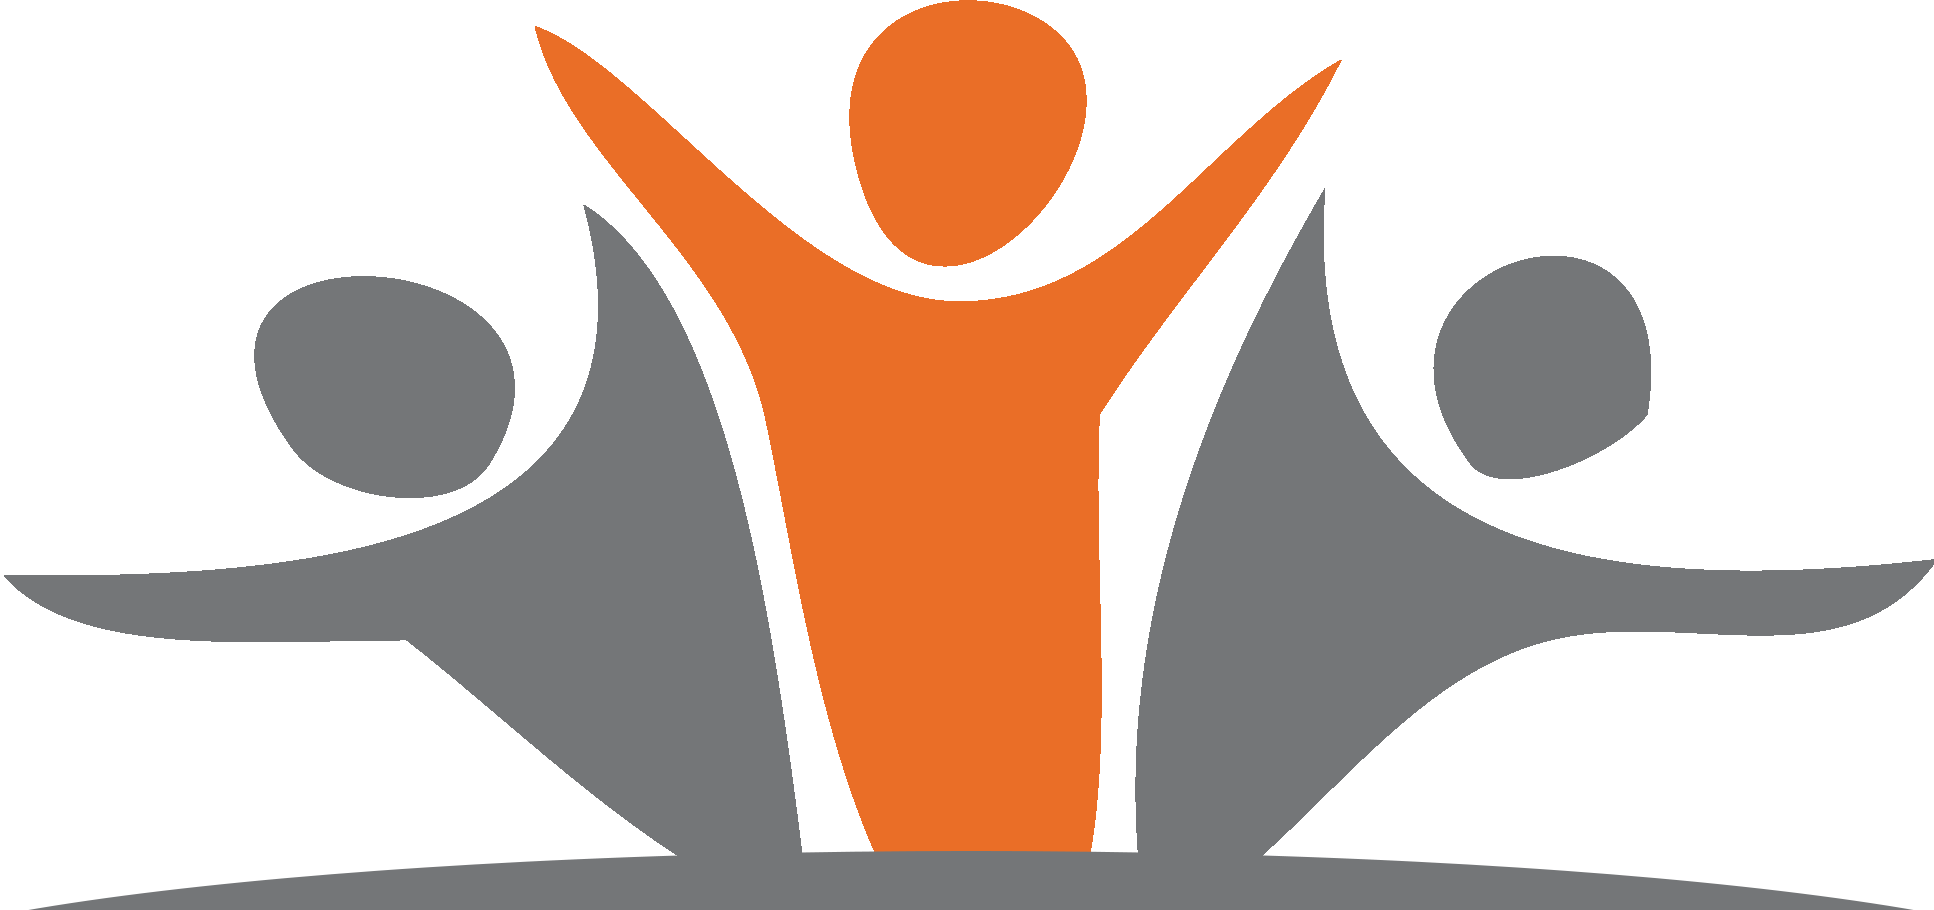 Logo Servicestelle Jugendbeteiligung